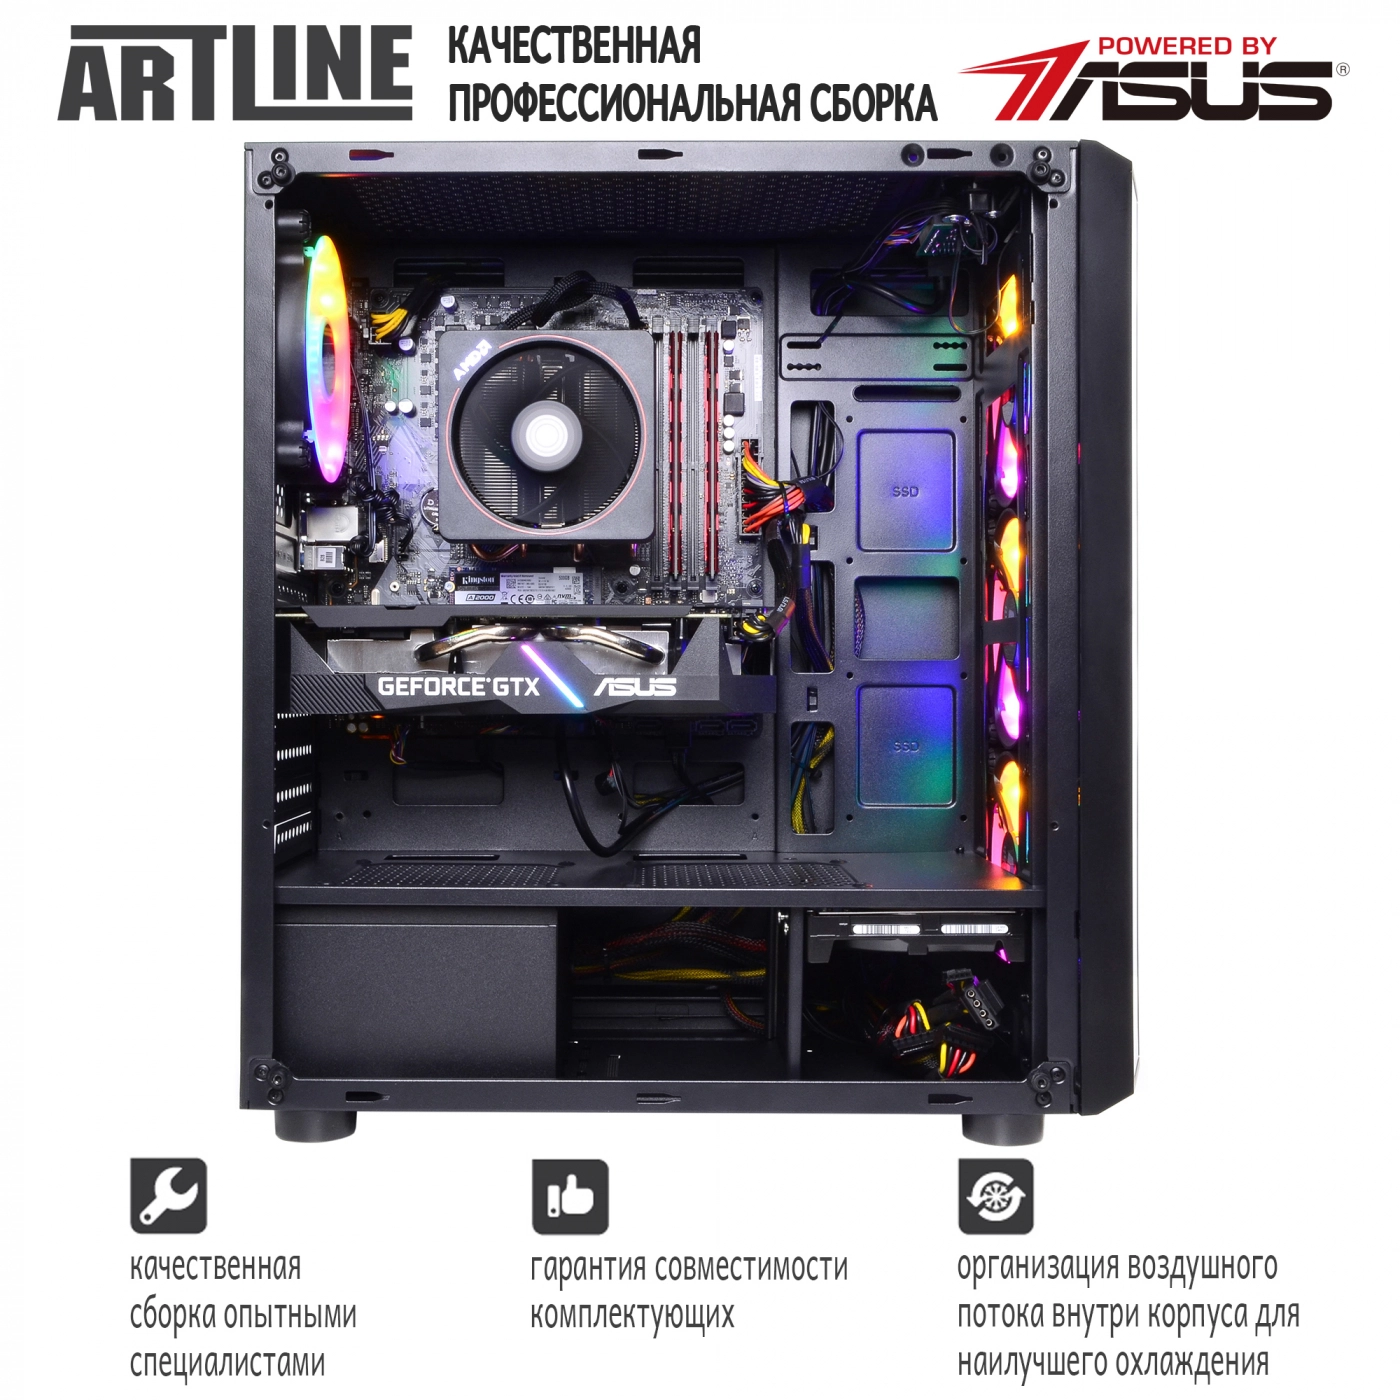 Купить Компьютер ARTLINE Gaming X63v10 - фото 9